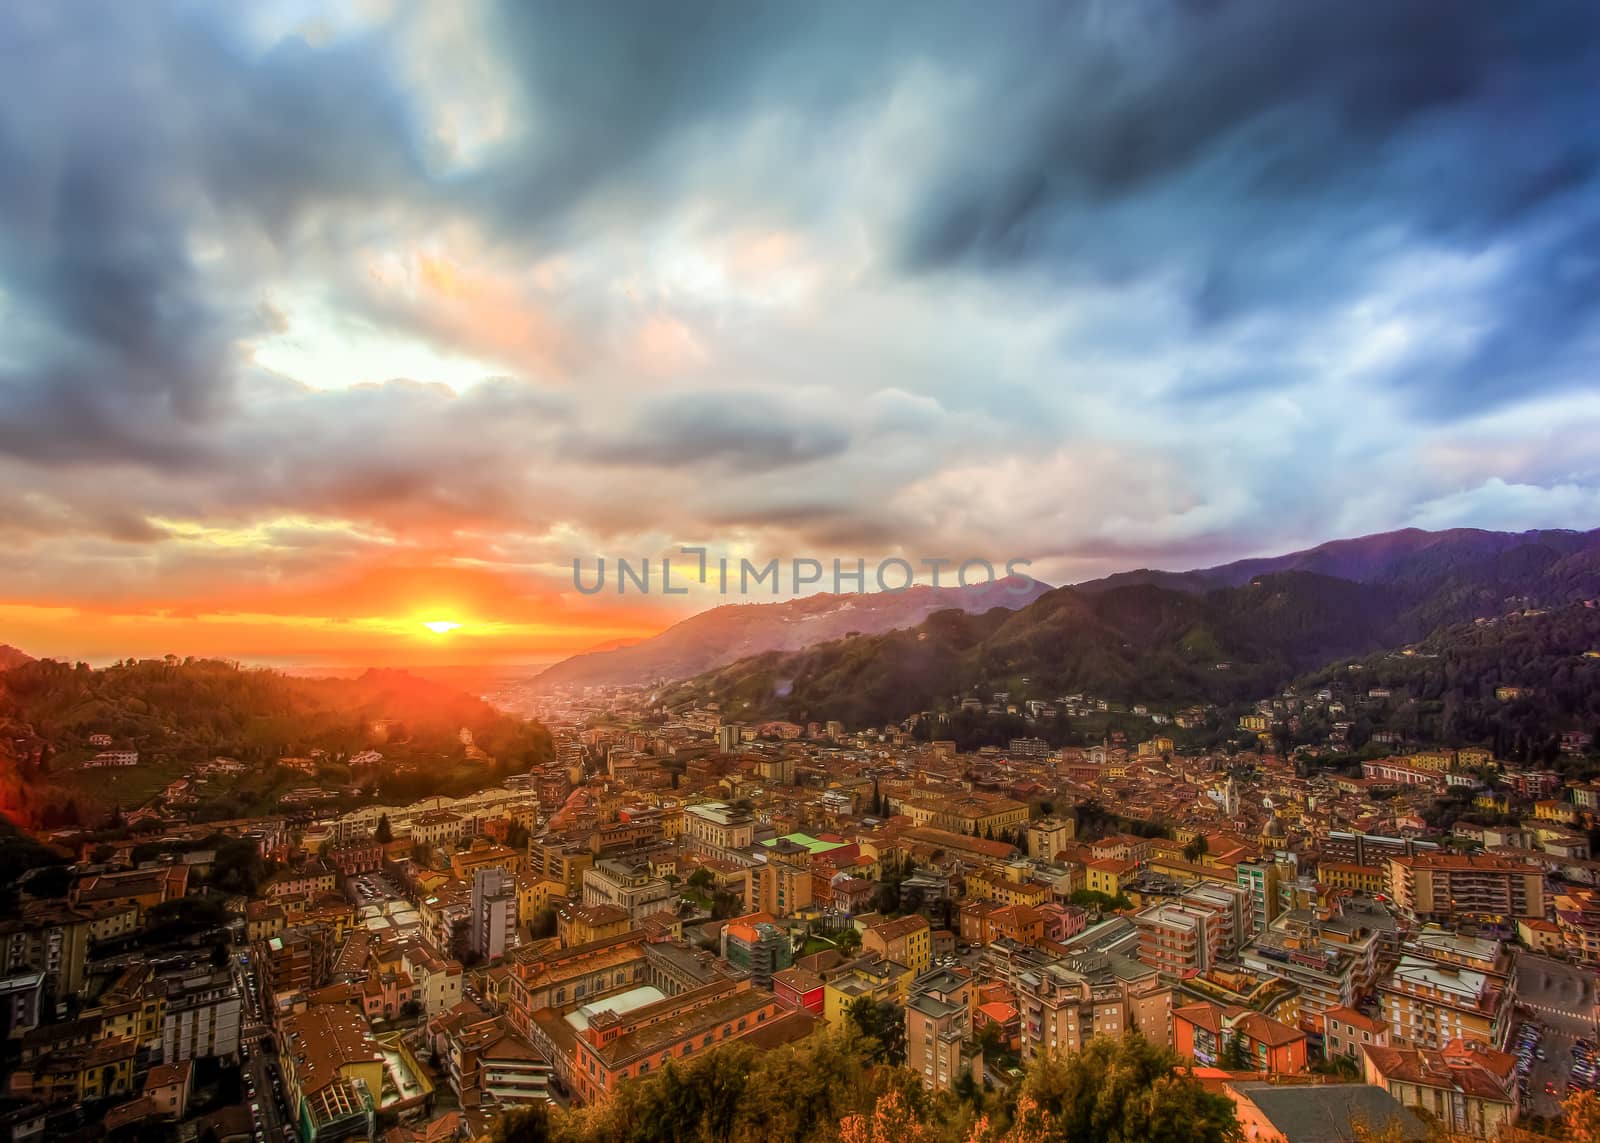 City of Carrara by nicobernieri